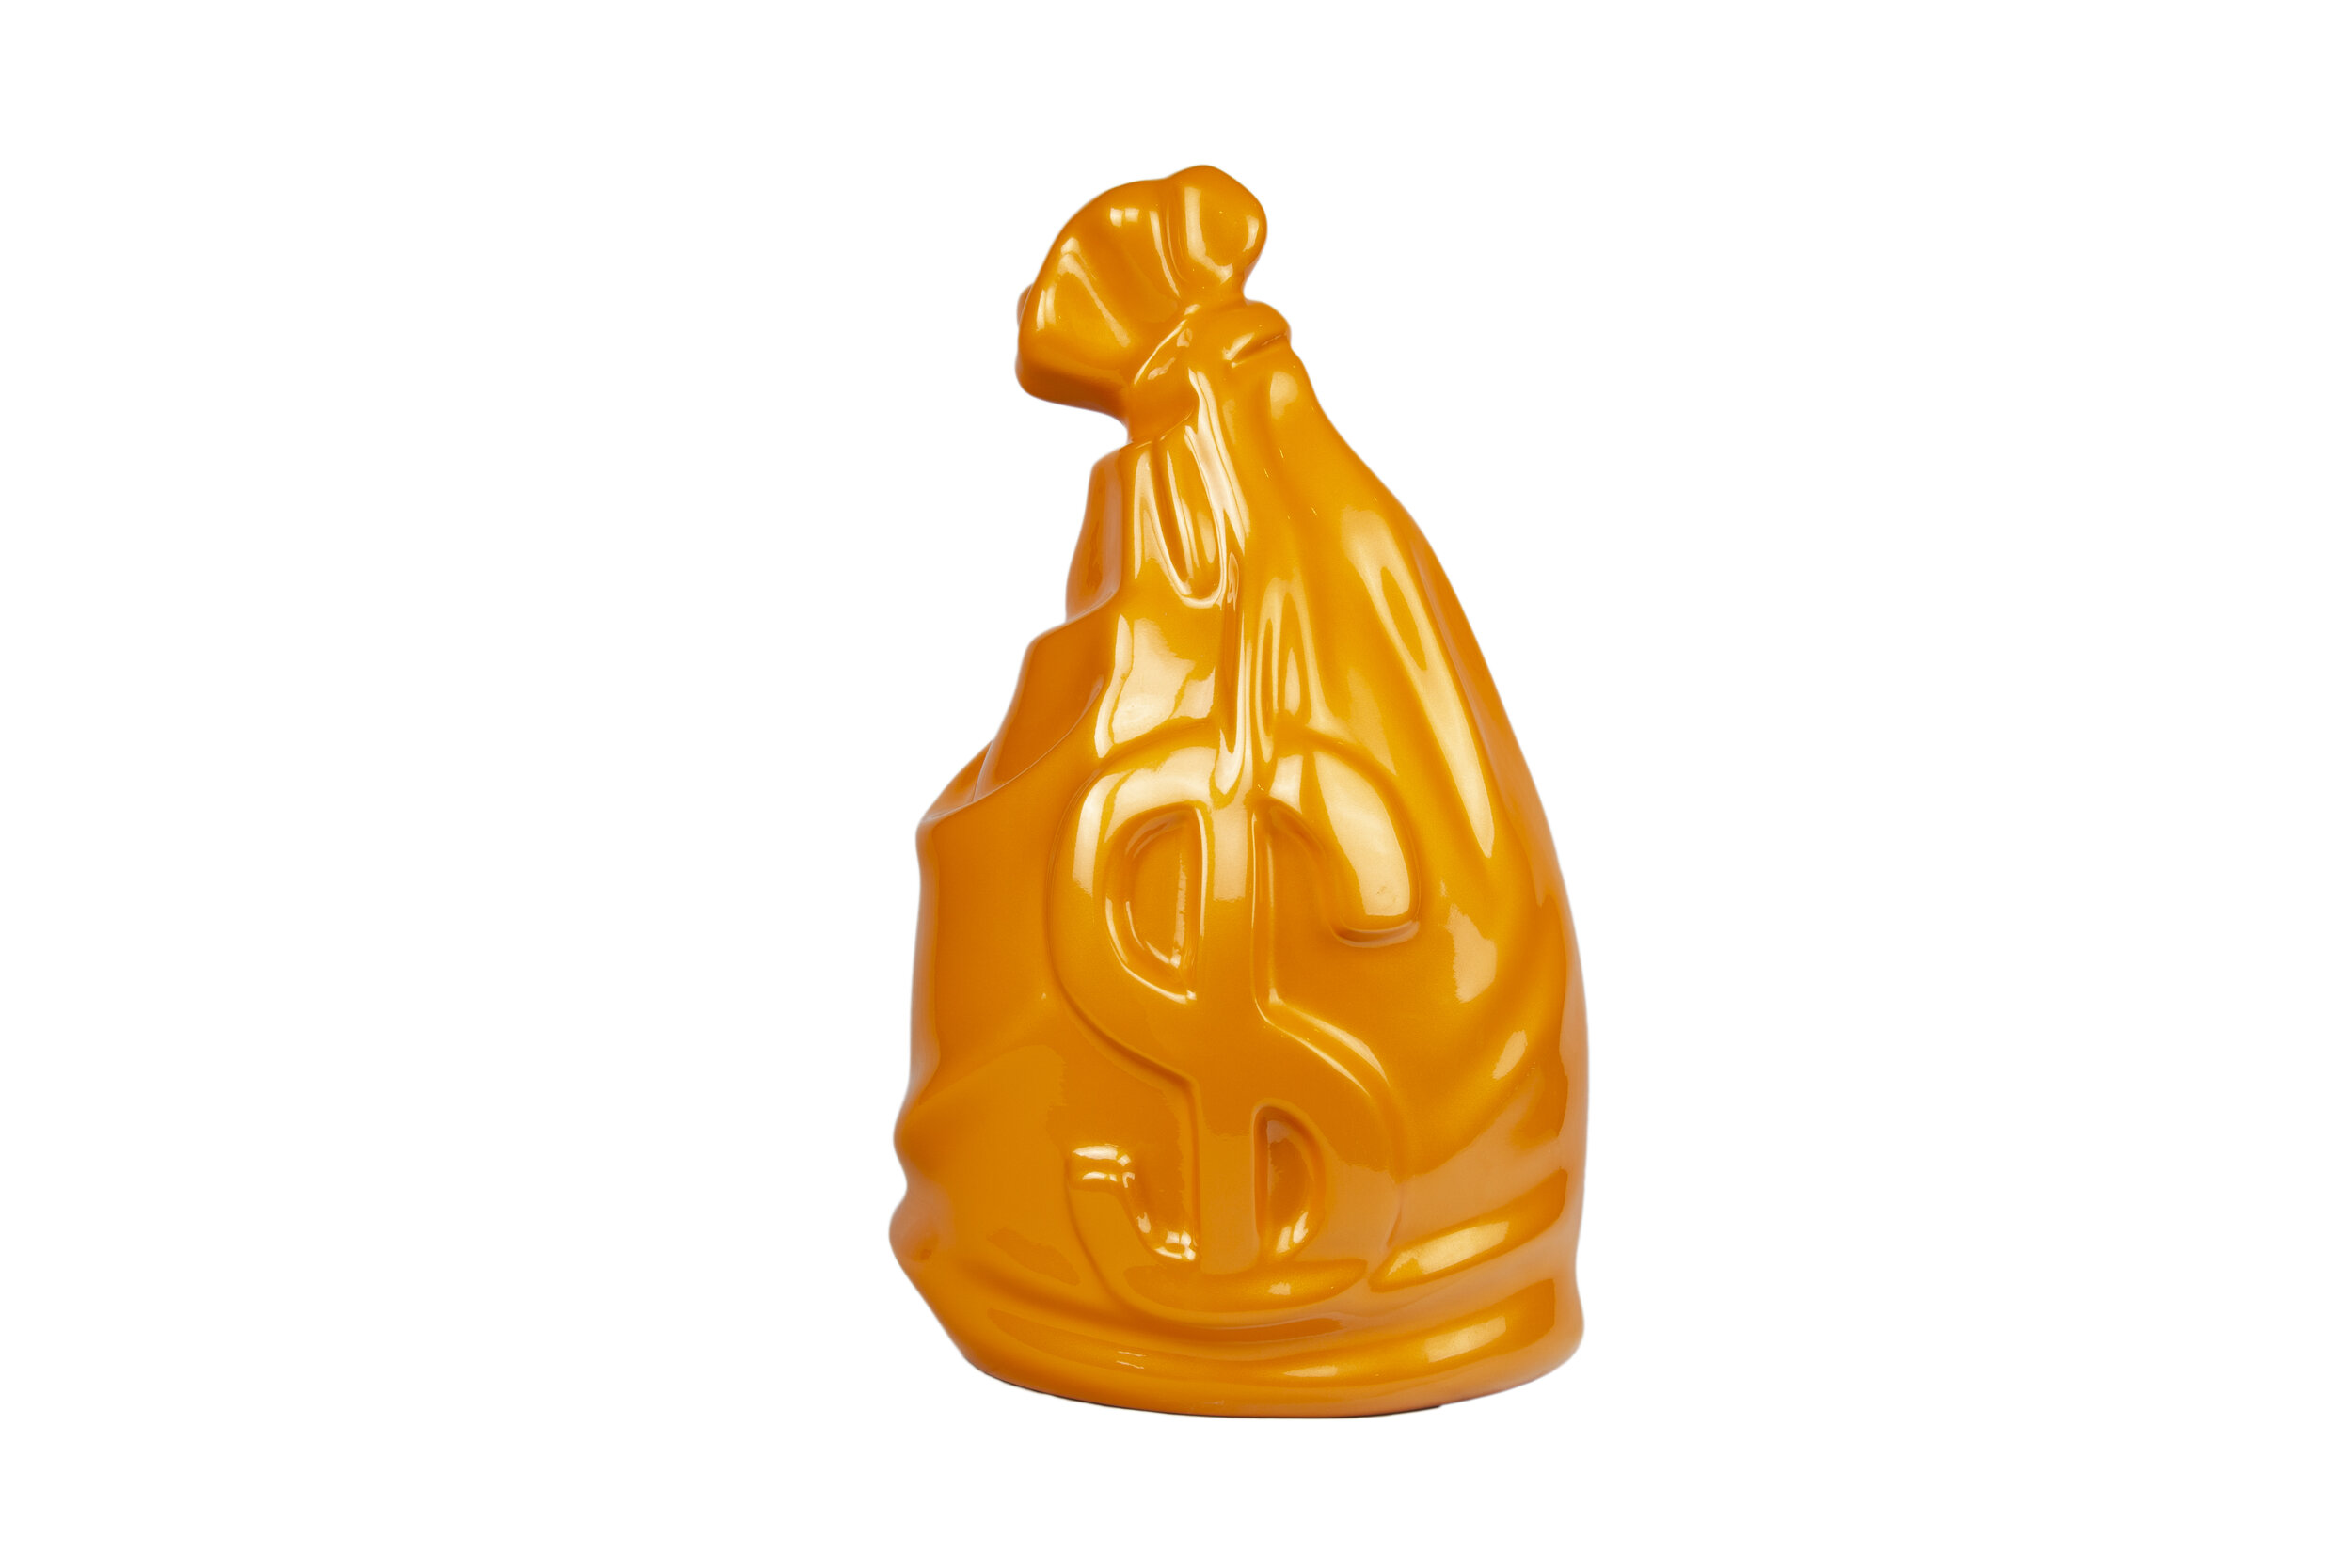 moneybag-sculpture-orange-2020.jpg